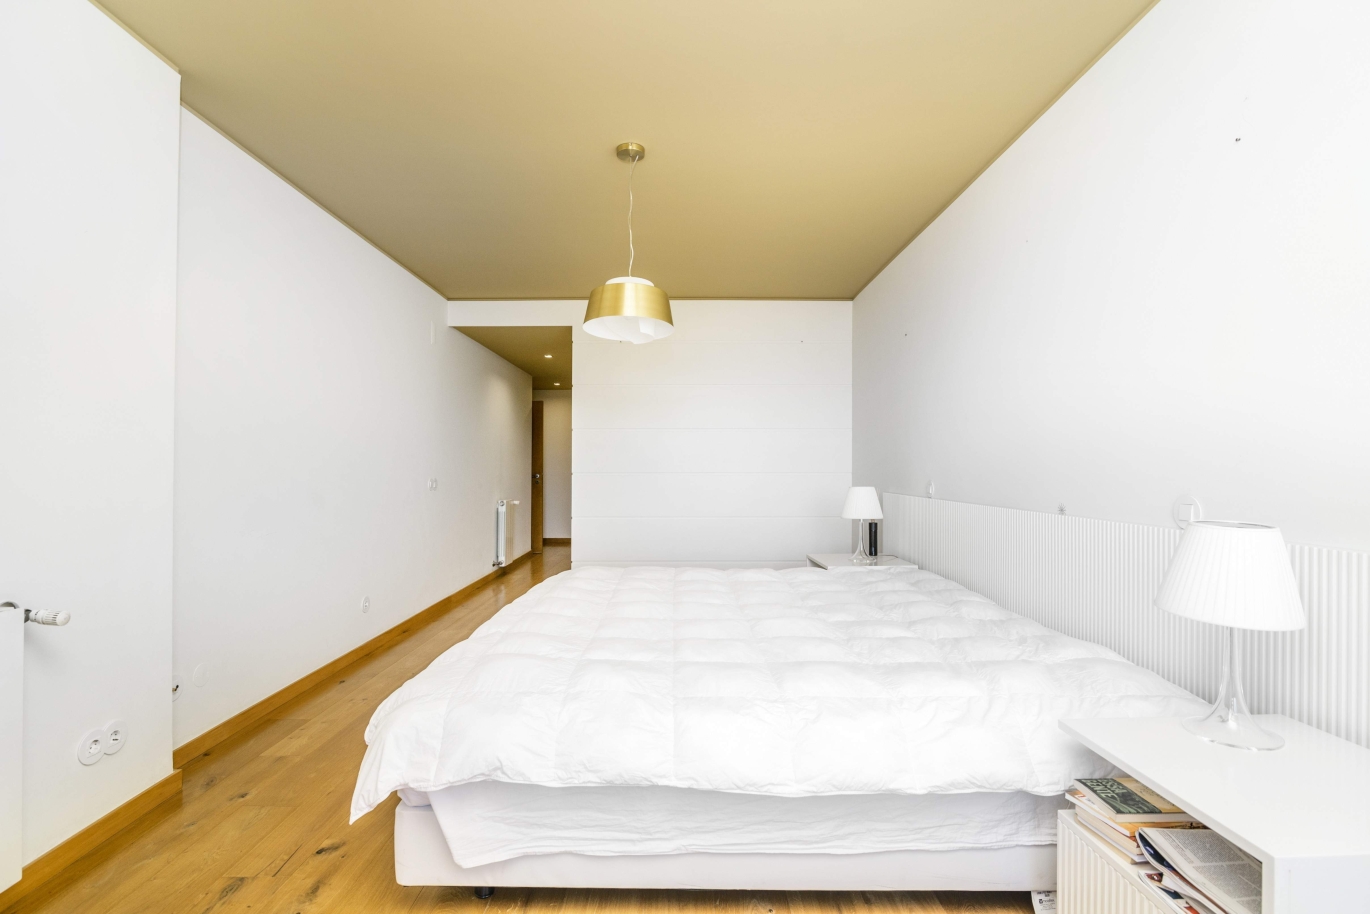 Apartamento en alquiler en condominio cerrado, V. N. Gaia, Porto, Portugal_146646